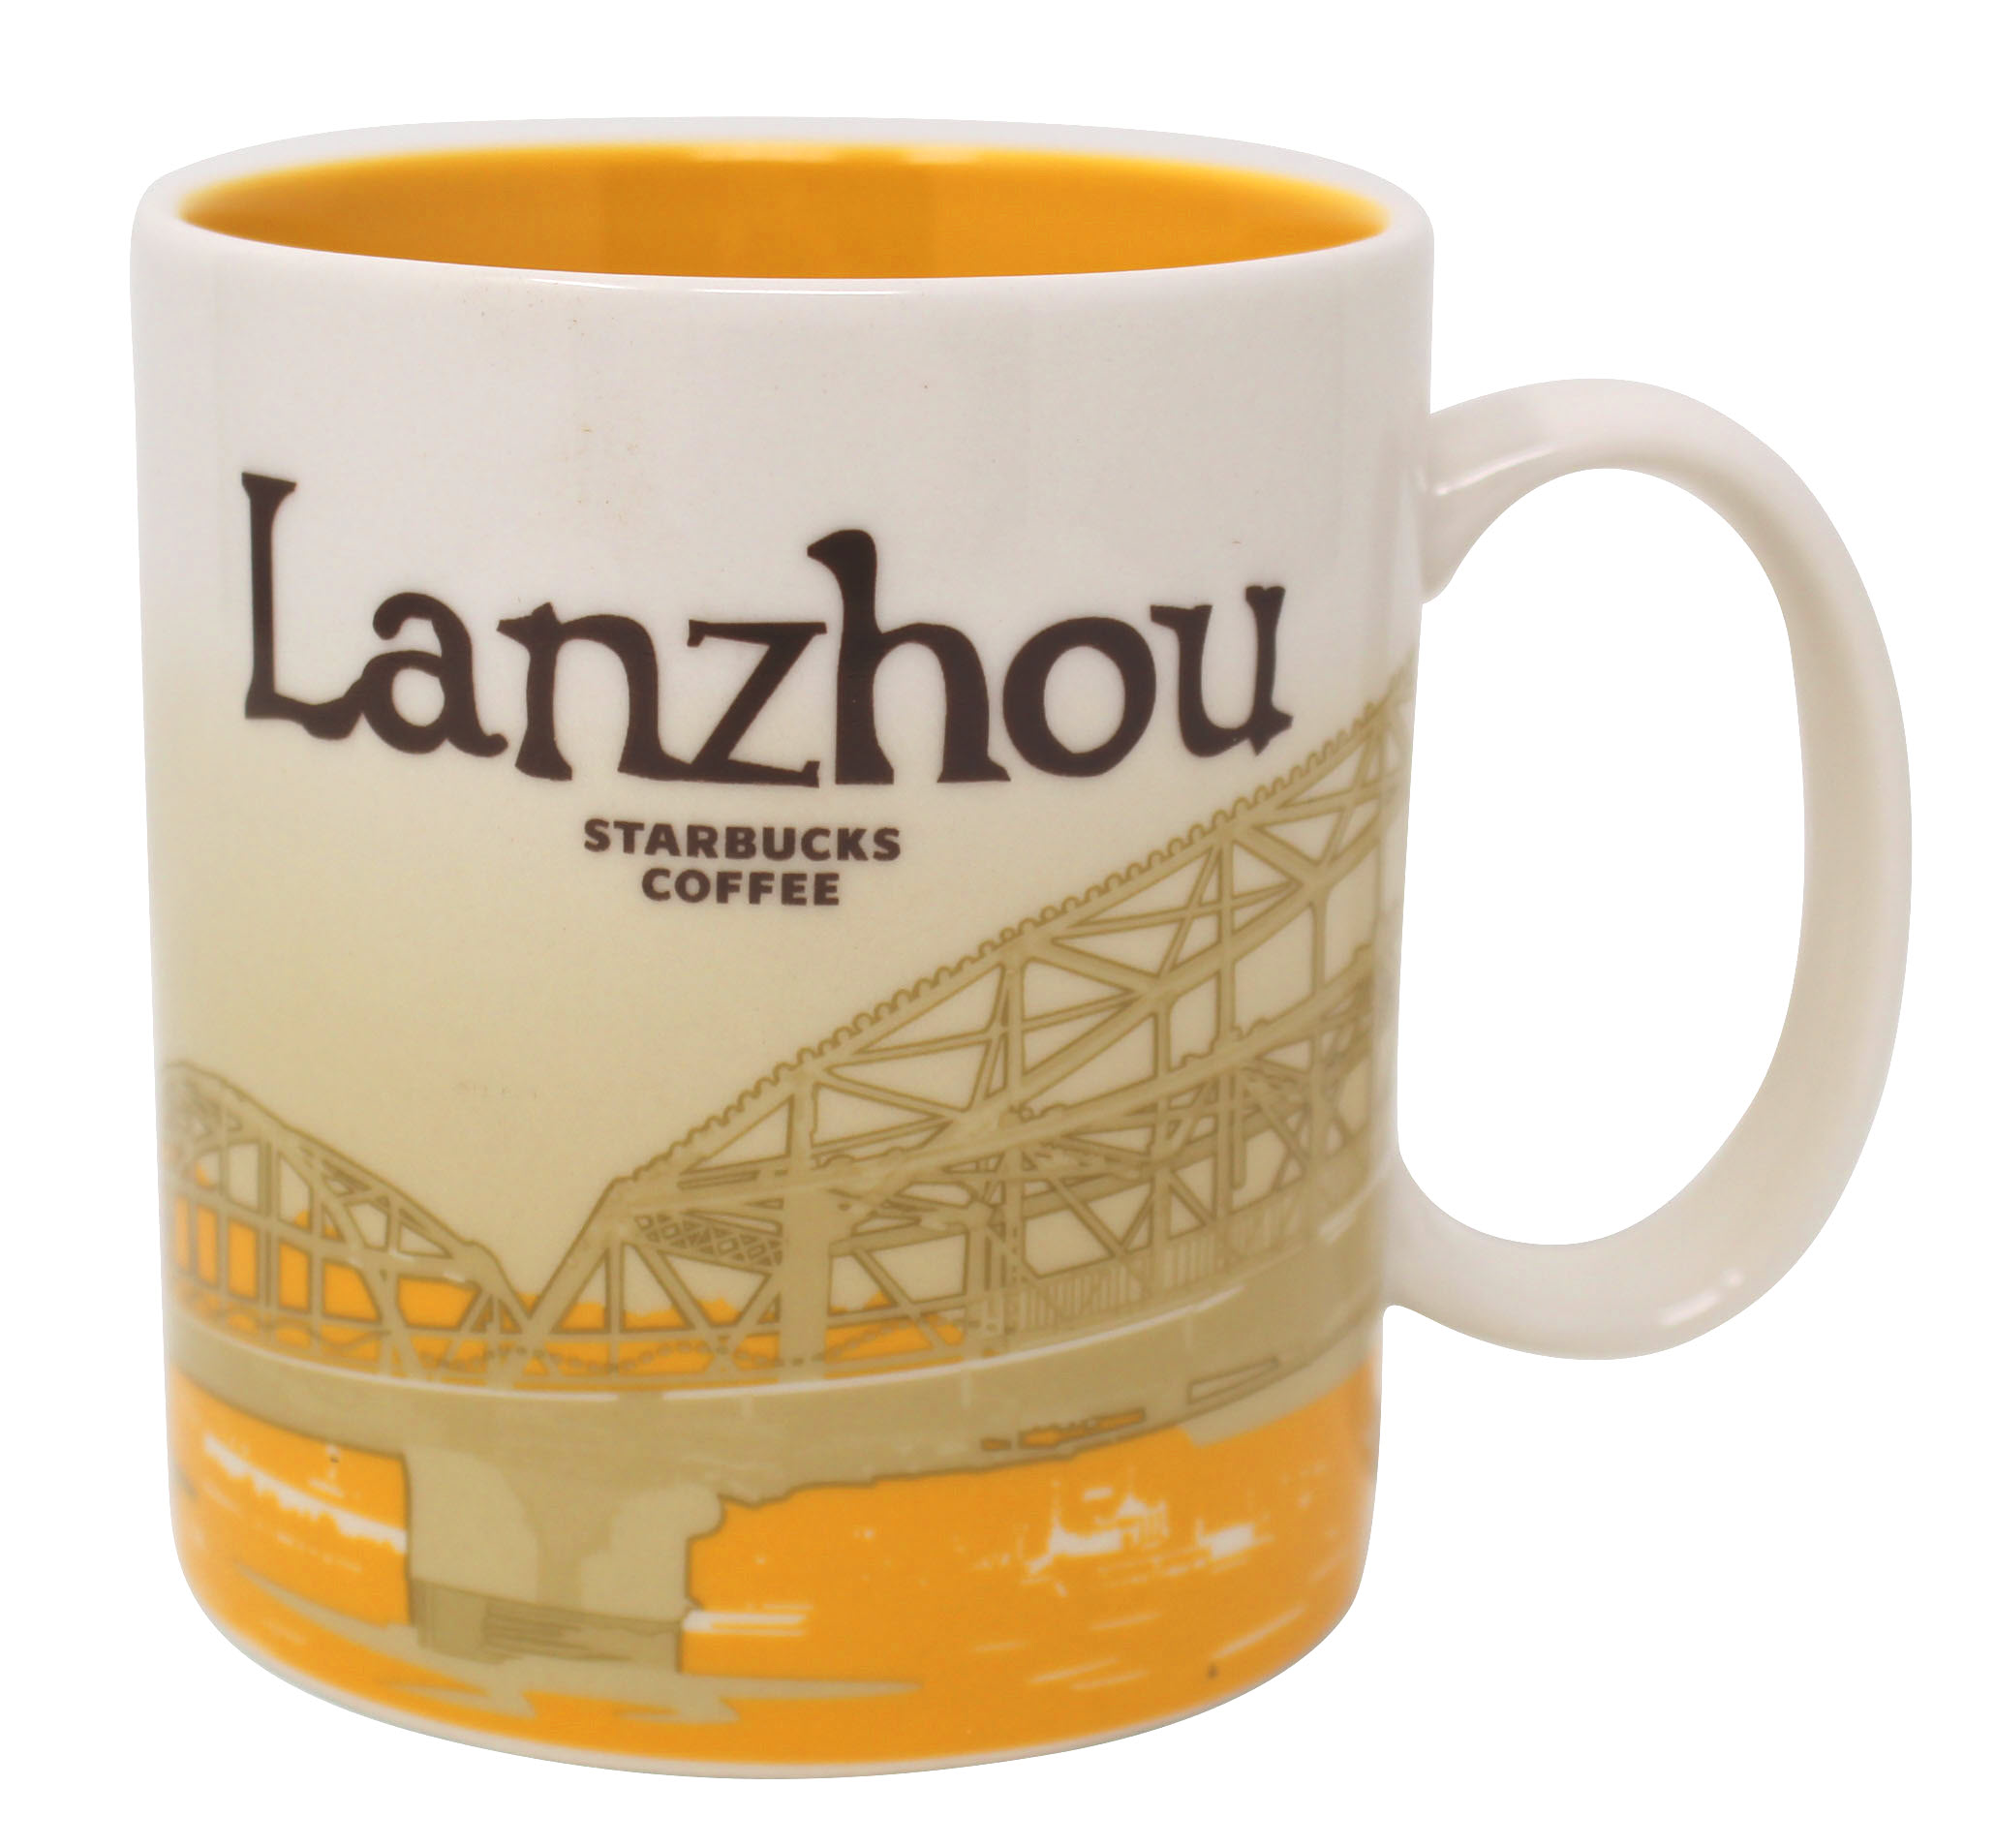 Starbucks Global Icon Series Lanzhou Ceramic Mug, 16 Oz